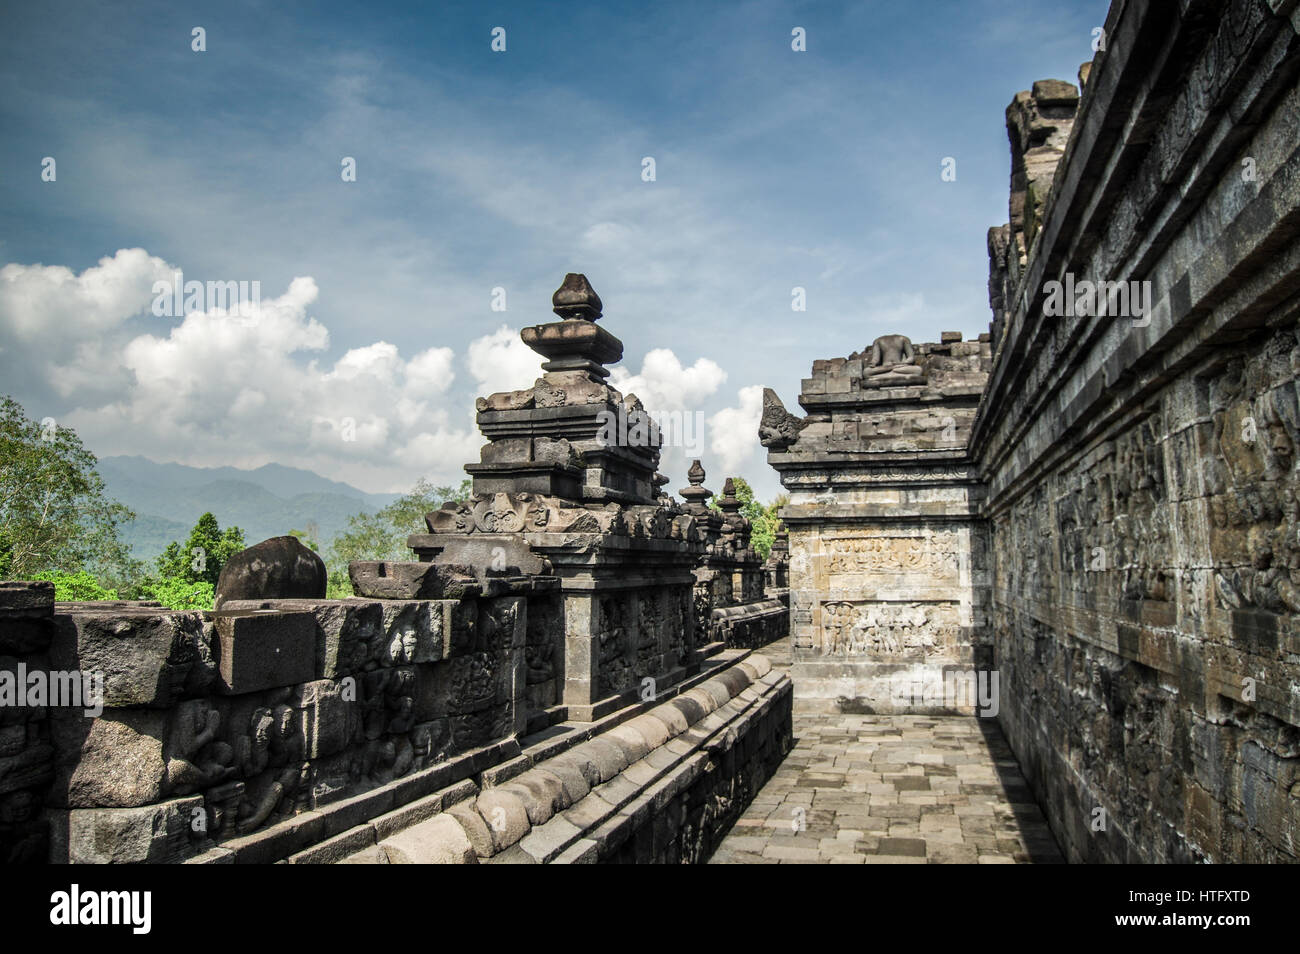 Murs de Temple Borodubur à Magelang - Centre de Java, Indonésie Banque D'Images